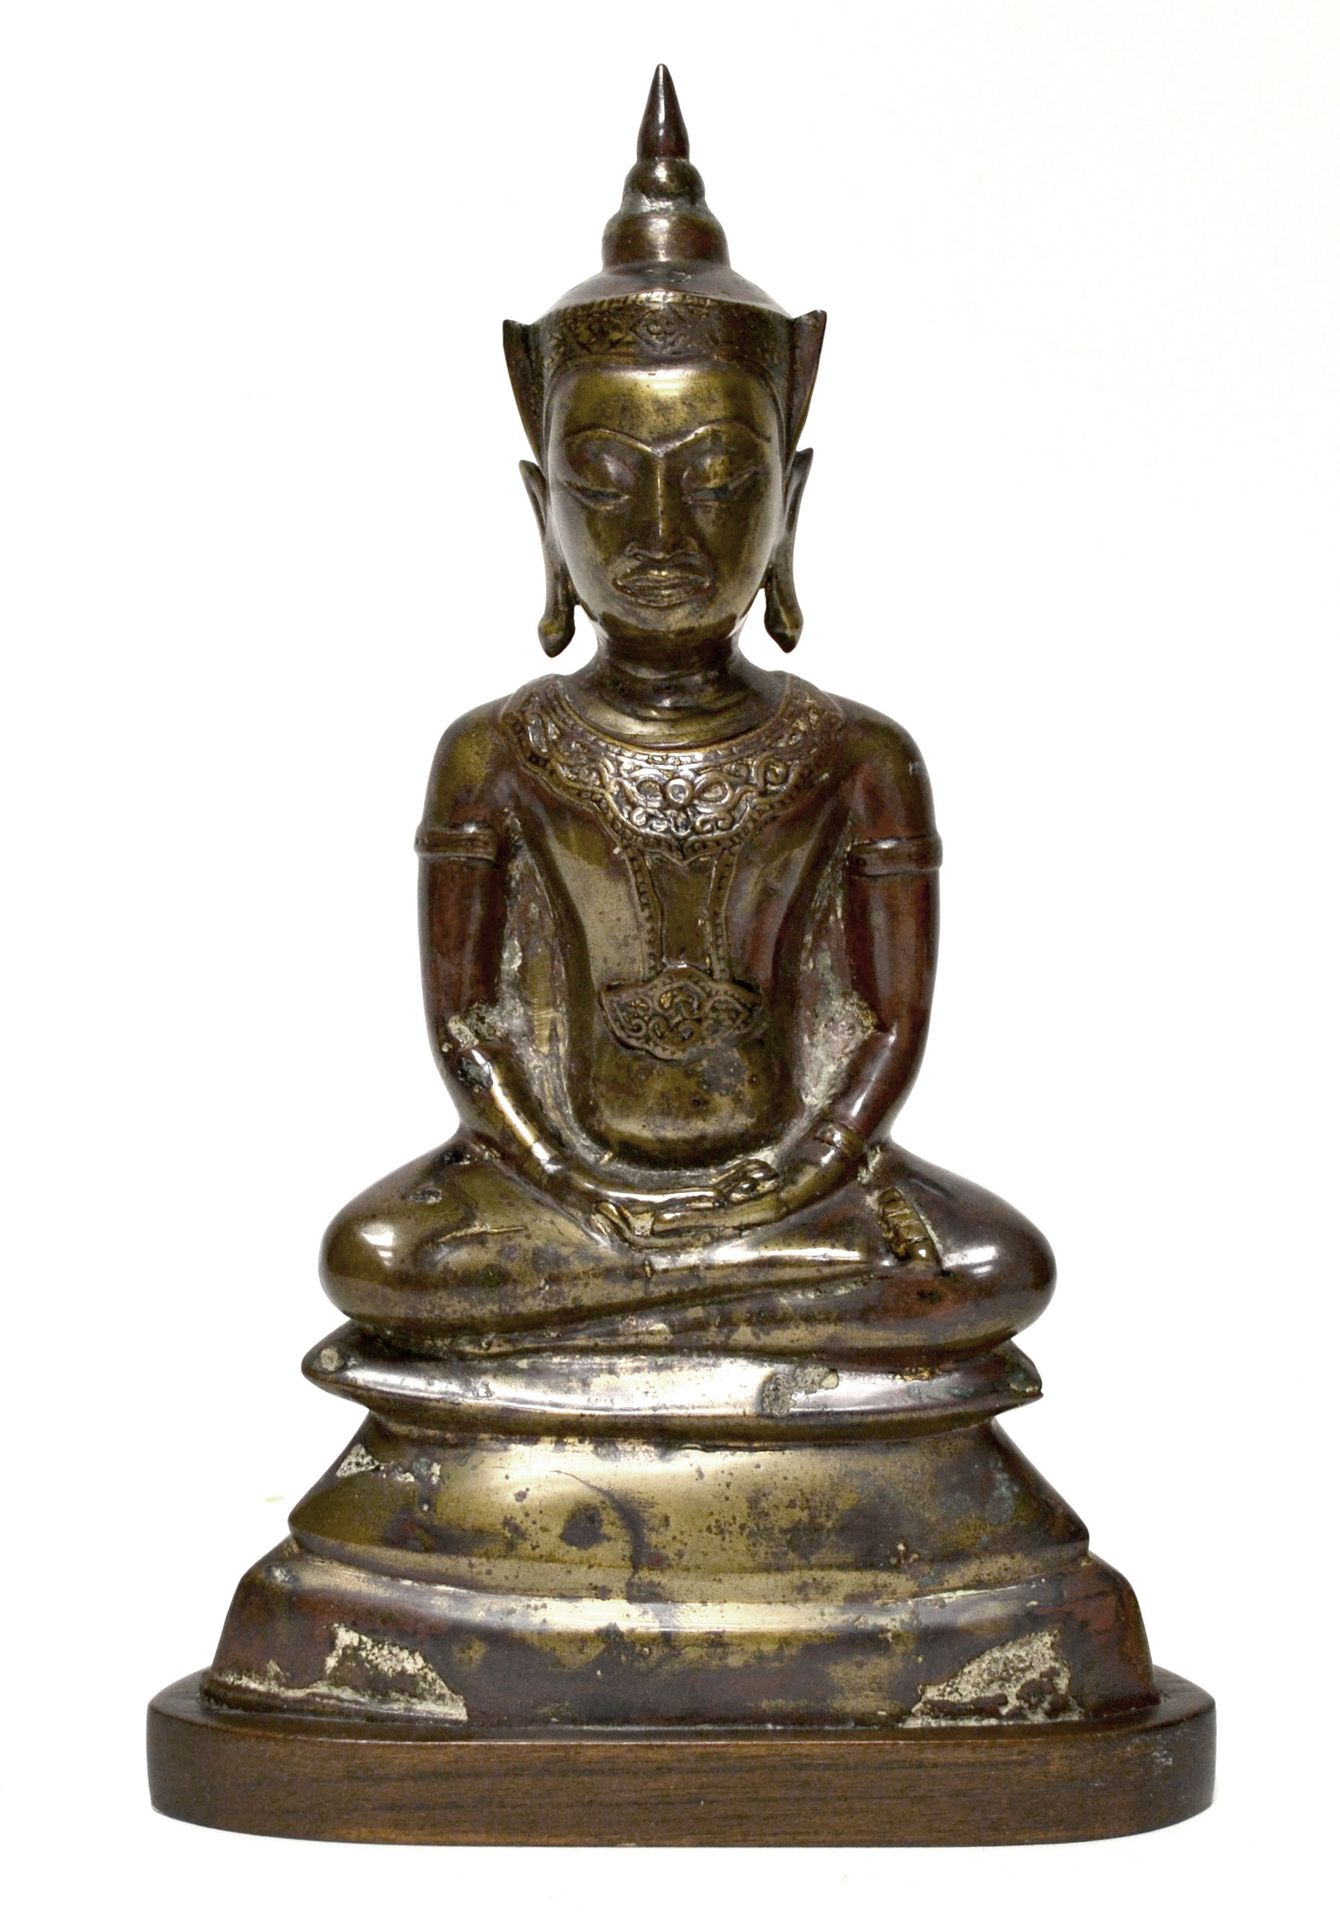 Null 泰国。铜制小菩萨，棕色铜锈和鎏金，坐姿（Dhyani mudra）。高13.5厘米，木质底座。